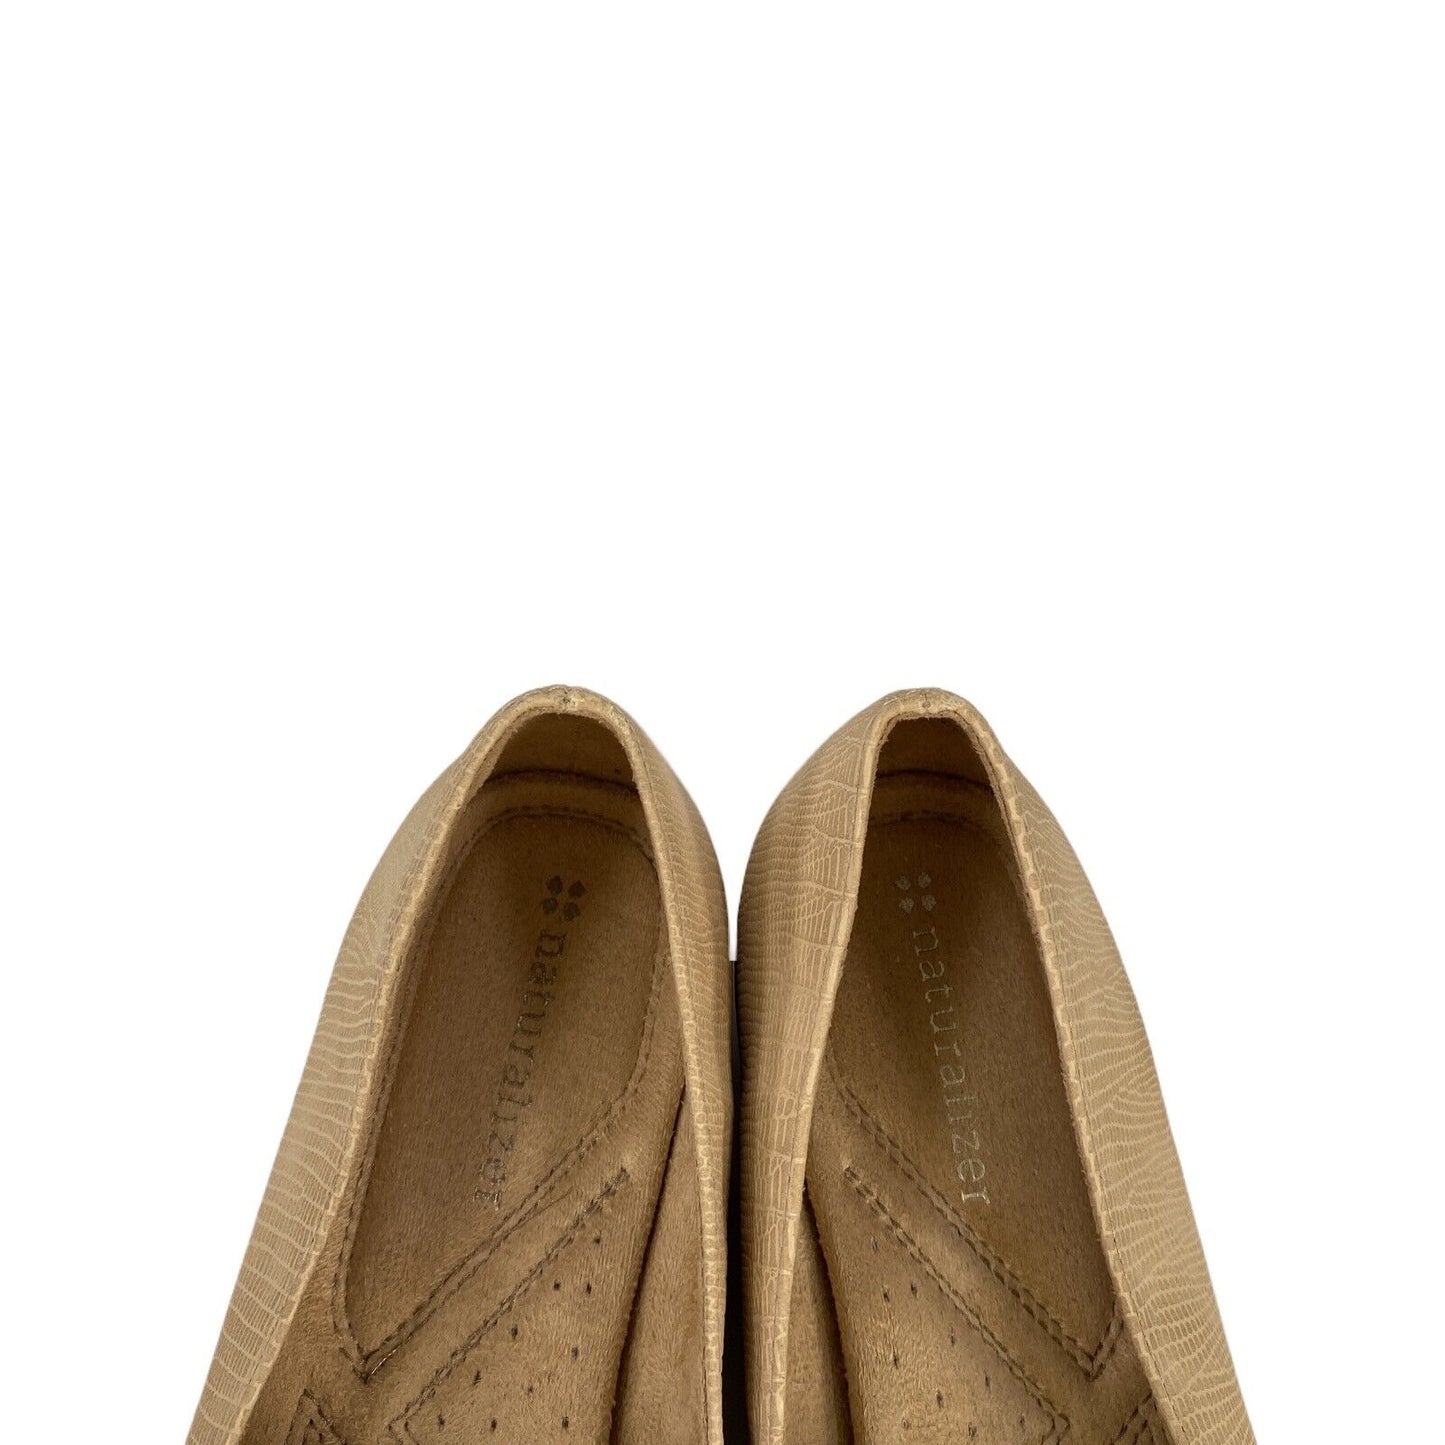 Zapatos planos Rheis con diamantes de imitación beige de Naturalizer para mujer - 6M